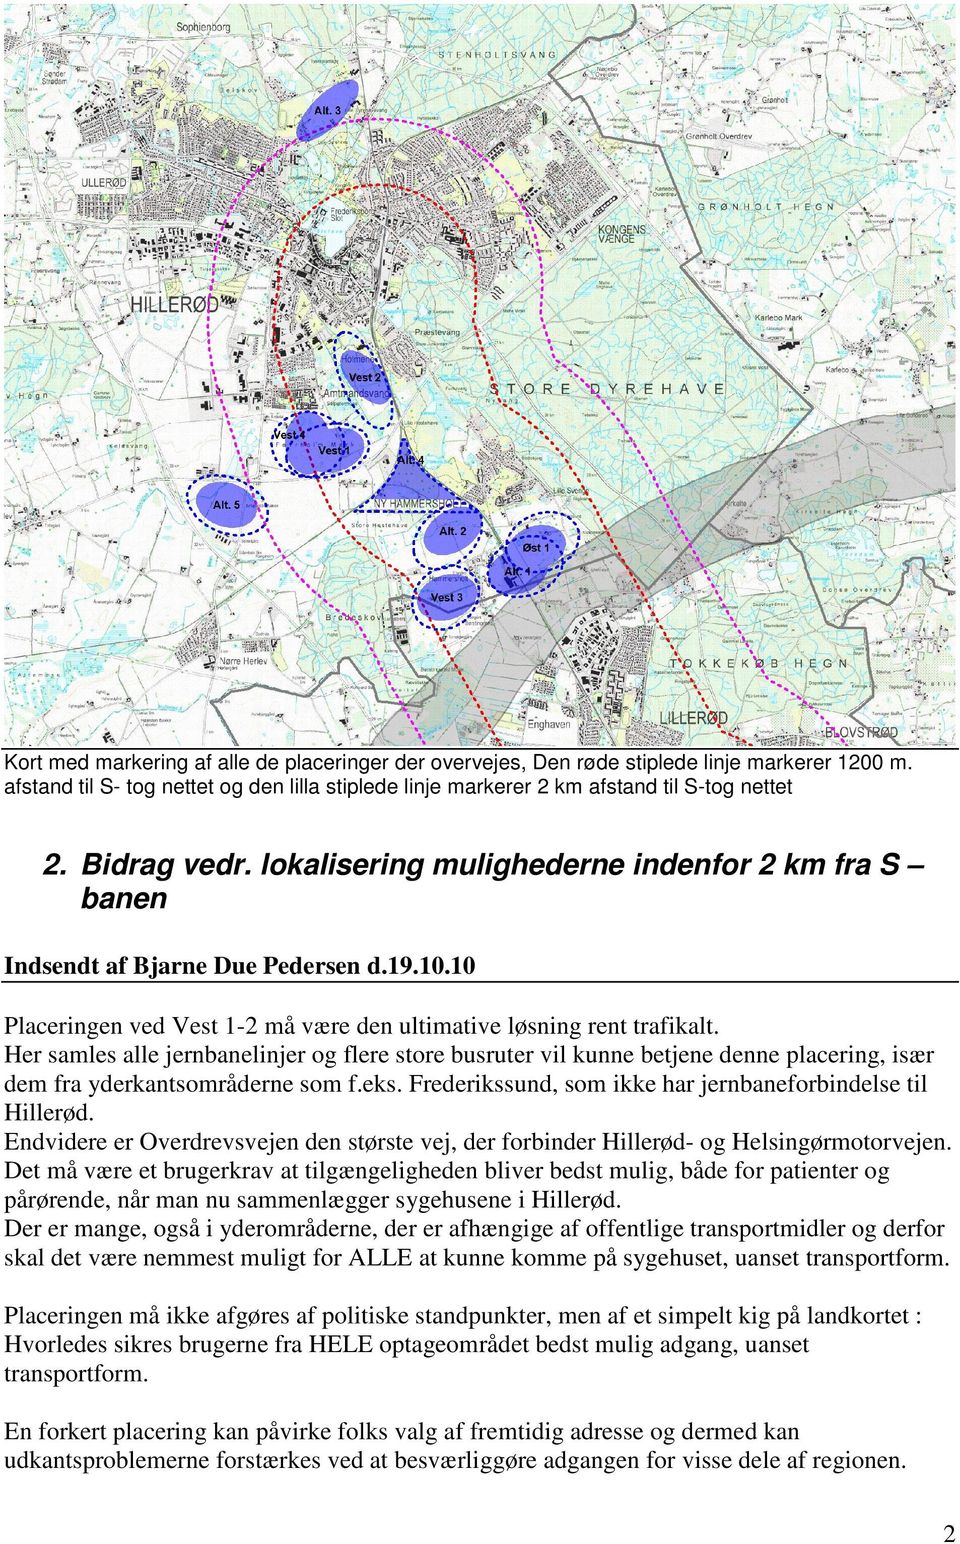 Her samles alle jernbanelinjer og flere store busruter vil kunne betjene denne placering, især dem fra yderkantsområderne som f.eks. Frederikssund, som ikke har jernbaneforbindelse til Hillerød.